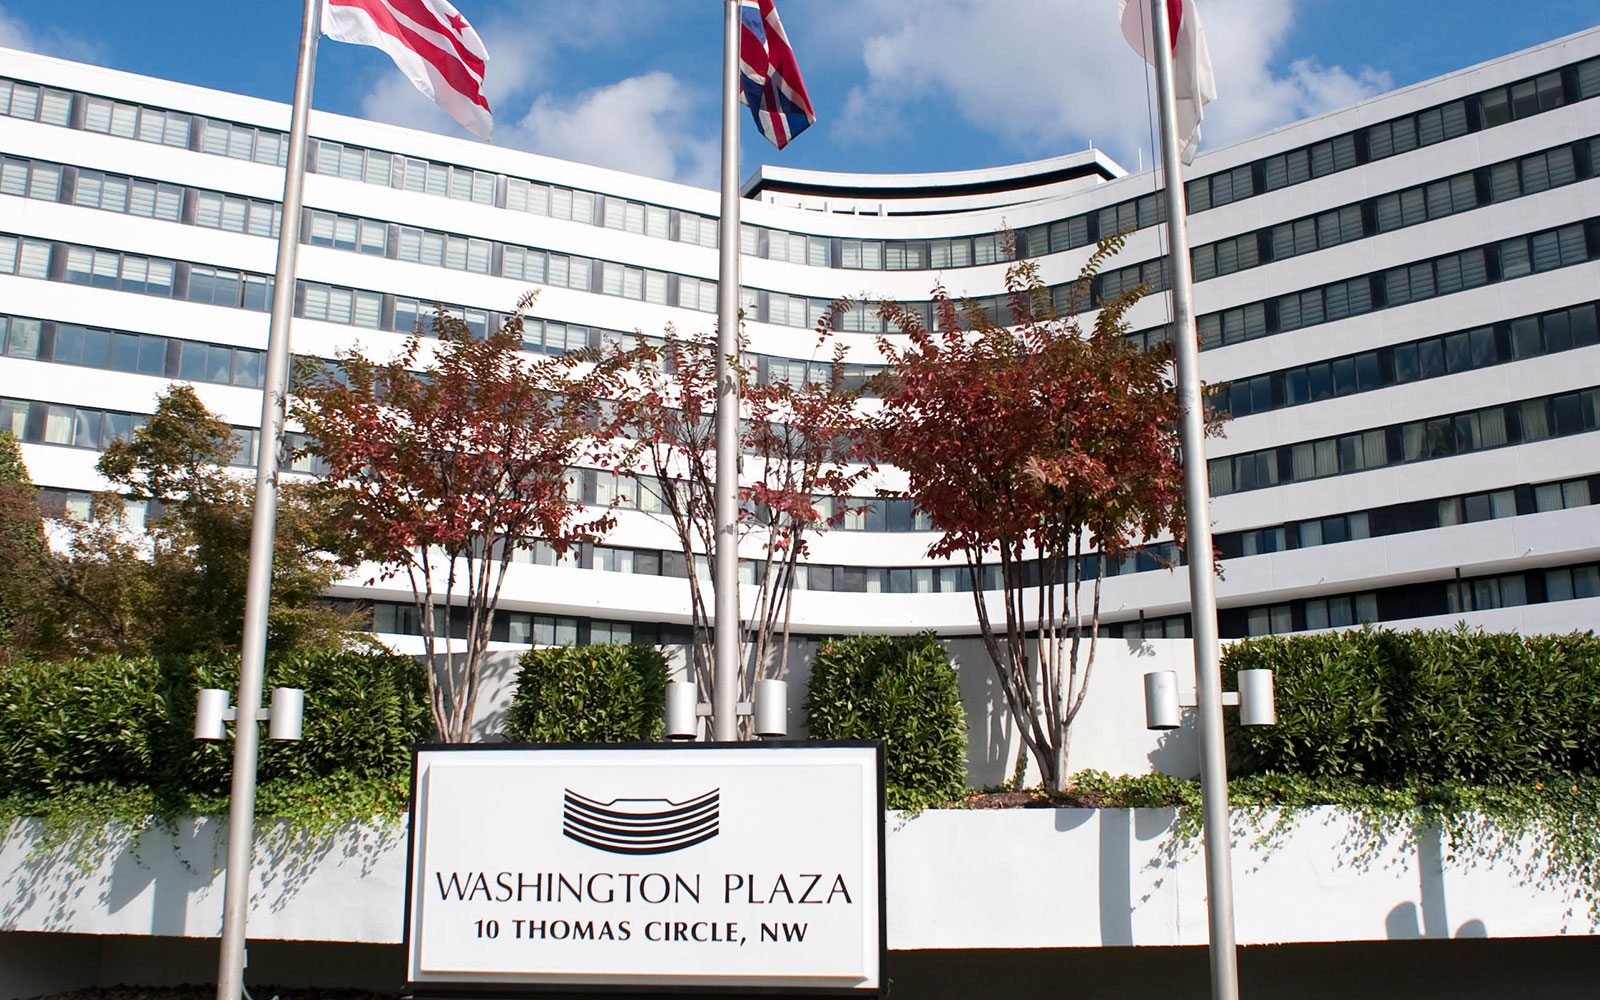 About Our Washington, DC Historic Hotel - Washington Plaza